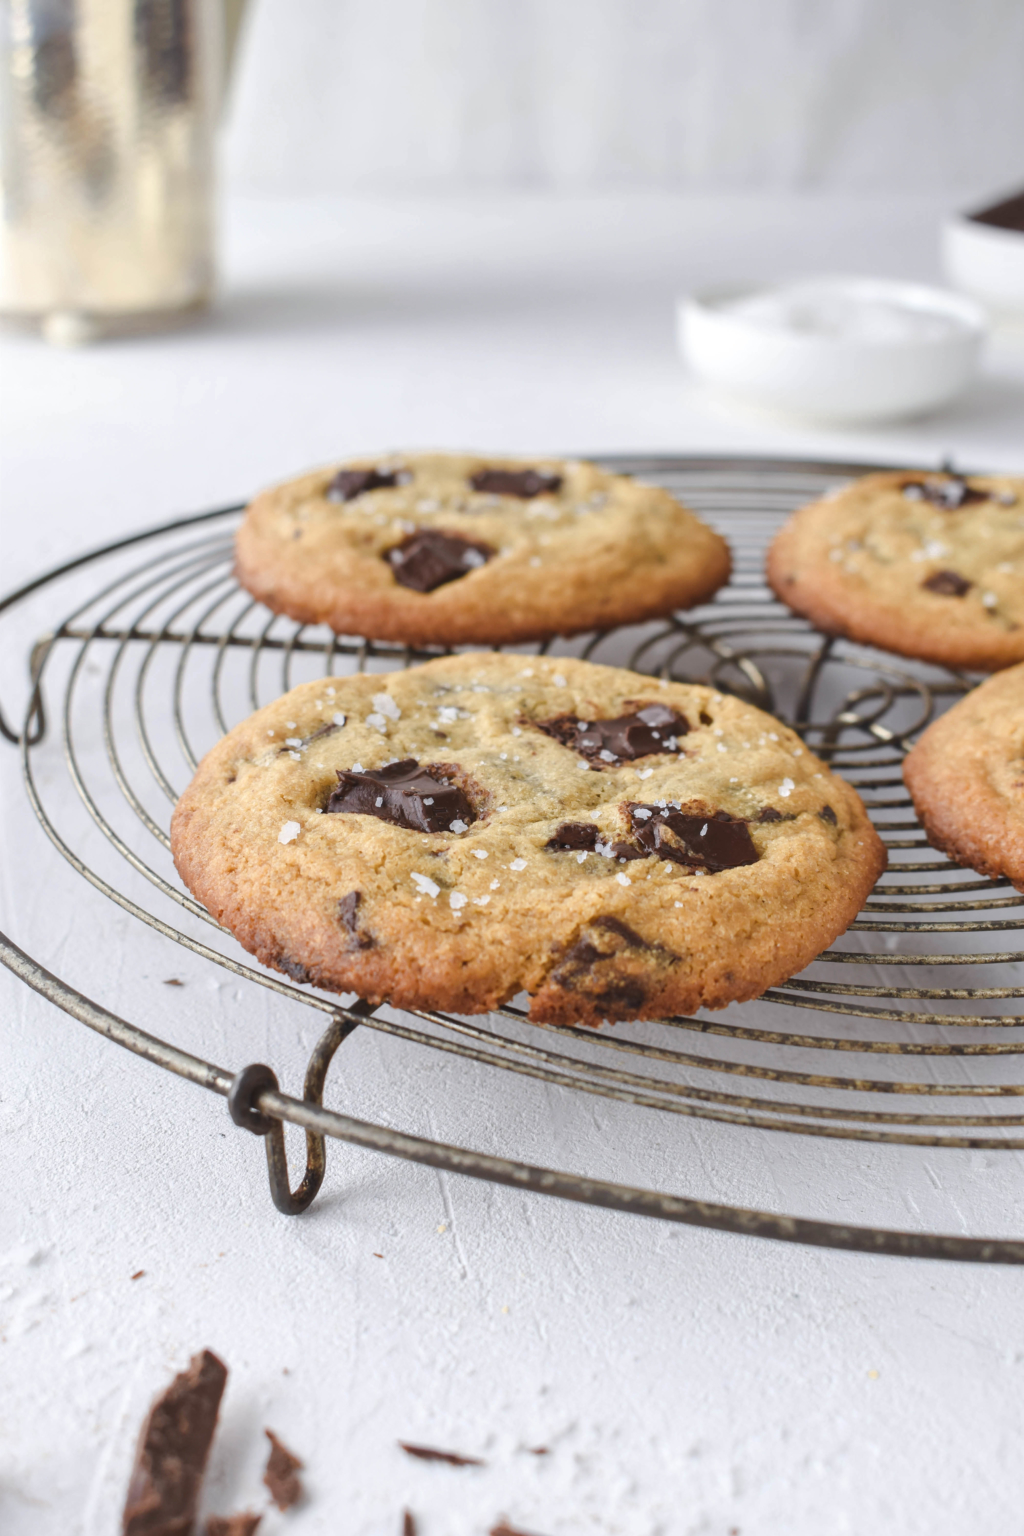 Rezept für weiche Chocolate Chip Cookies mit dunkler Schokolade. Ganz einfach und schnell gemacht. Bestes Rezept für amerikanische Cookies. #cookies #subway #kekse #schokolade